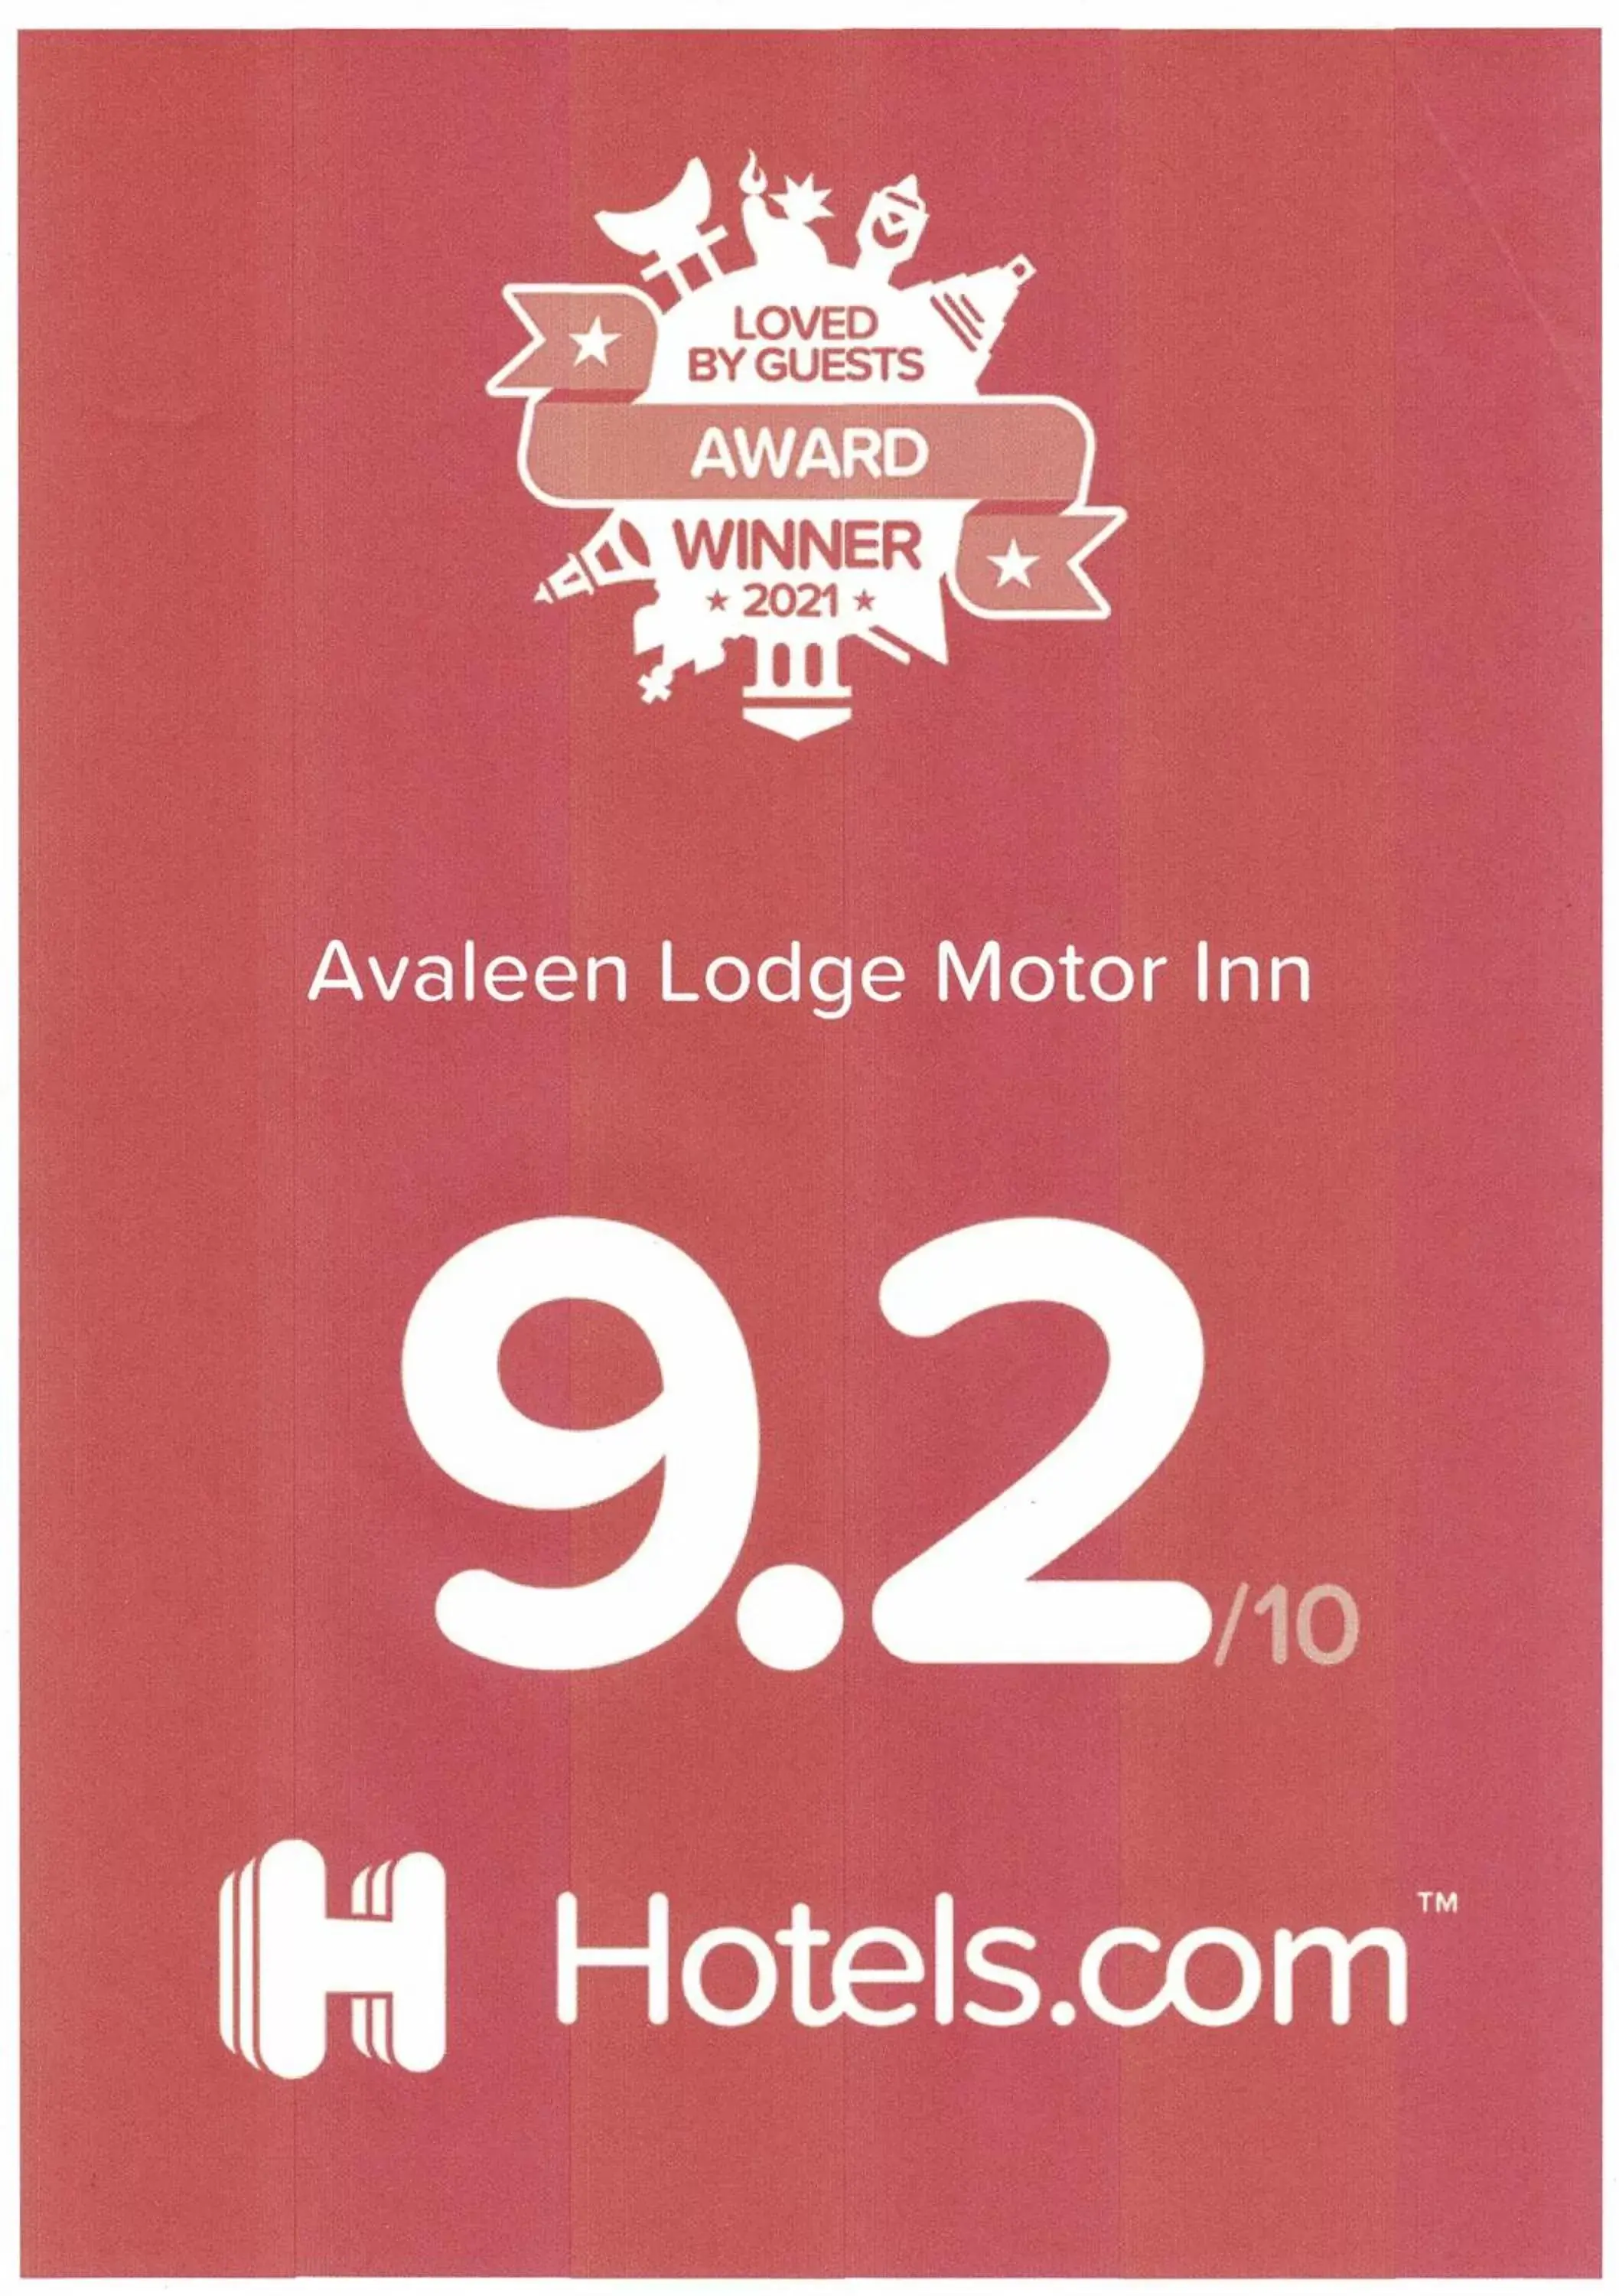 Avaleen Lodge Motor Inn